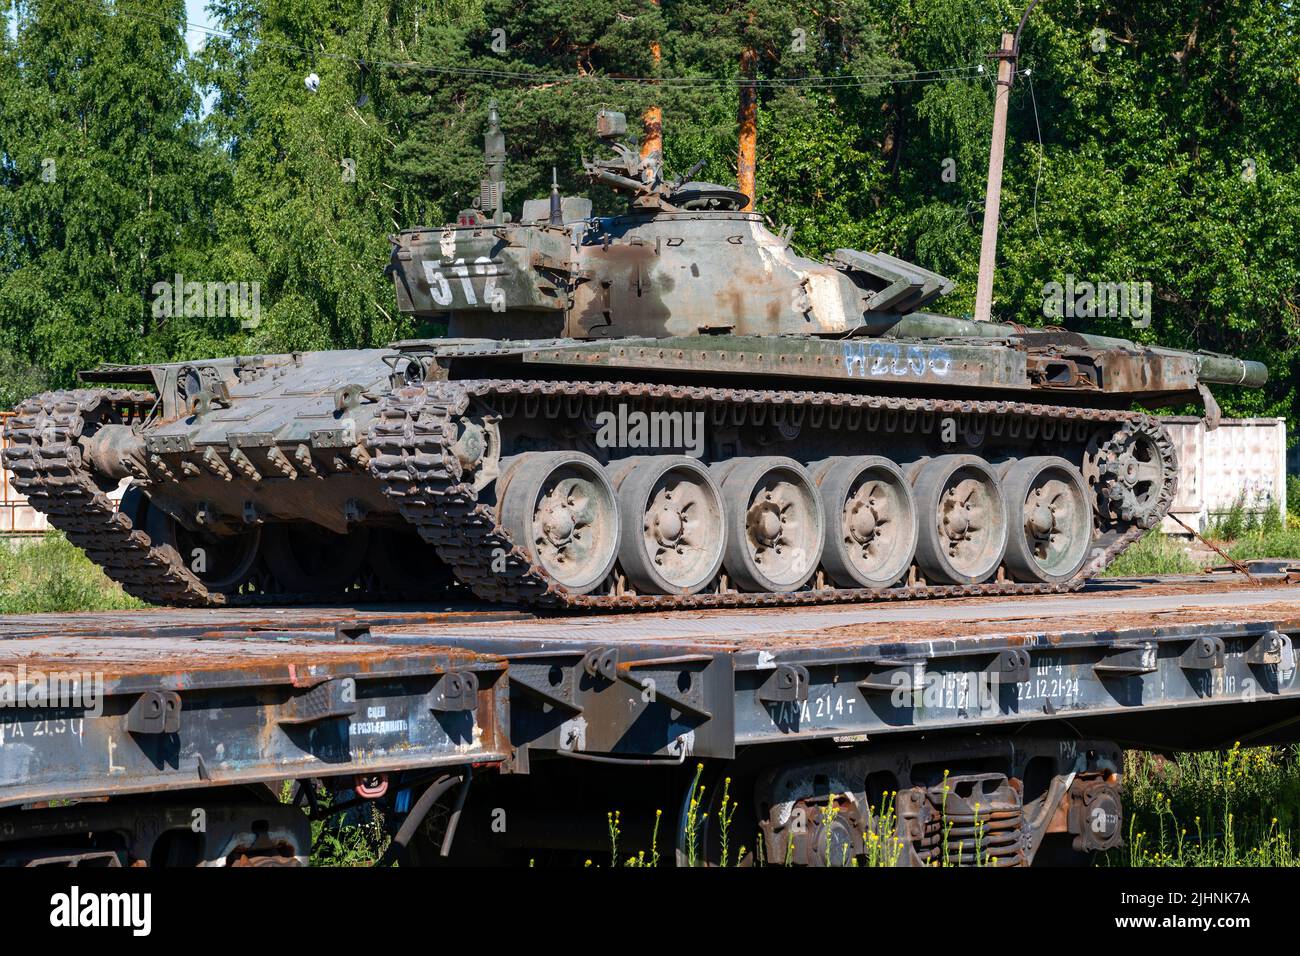 LENINGRAD, RUSSLAND - 02. JULI 2022: Alter russischer Panzer an einem sonnigen Sommertag auf einer Eisenbahnplattform. Transport von militärischer Ausrüstung Stockfoto